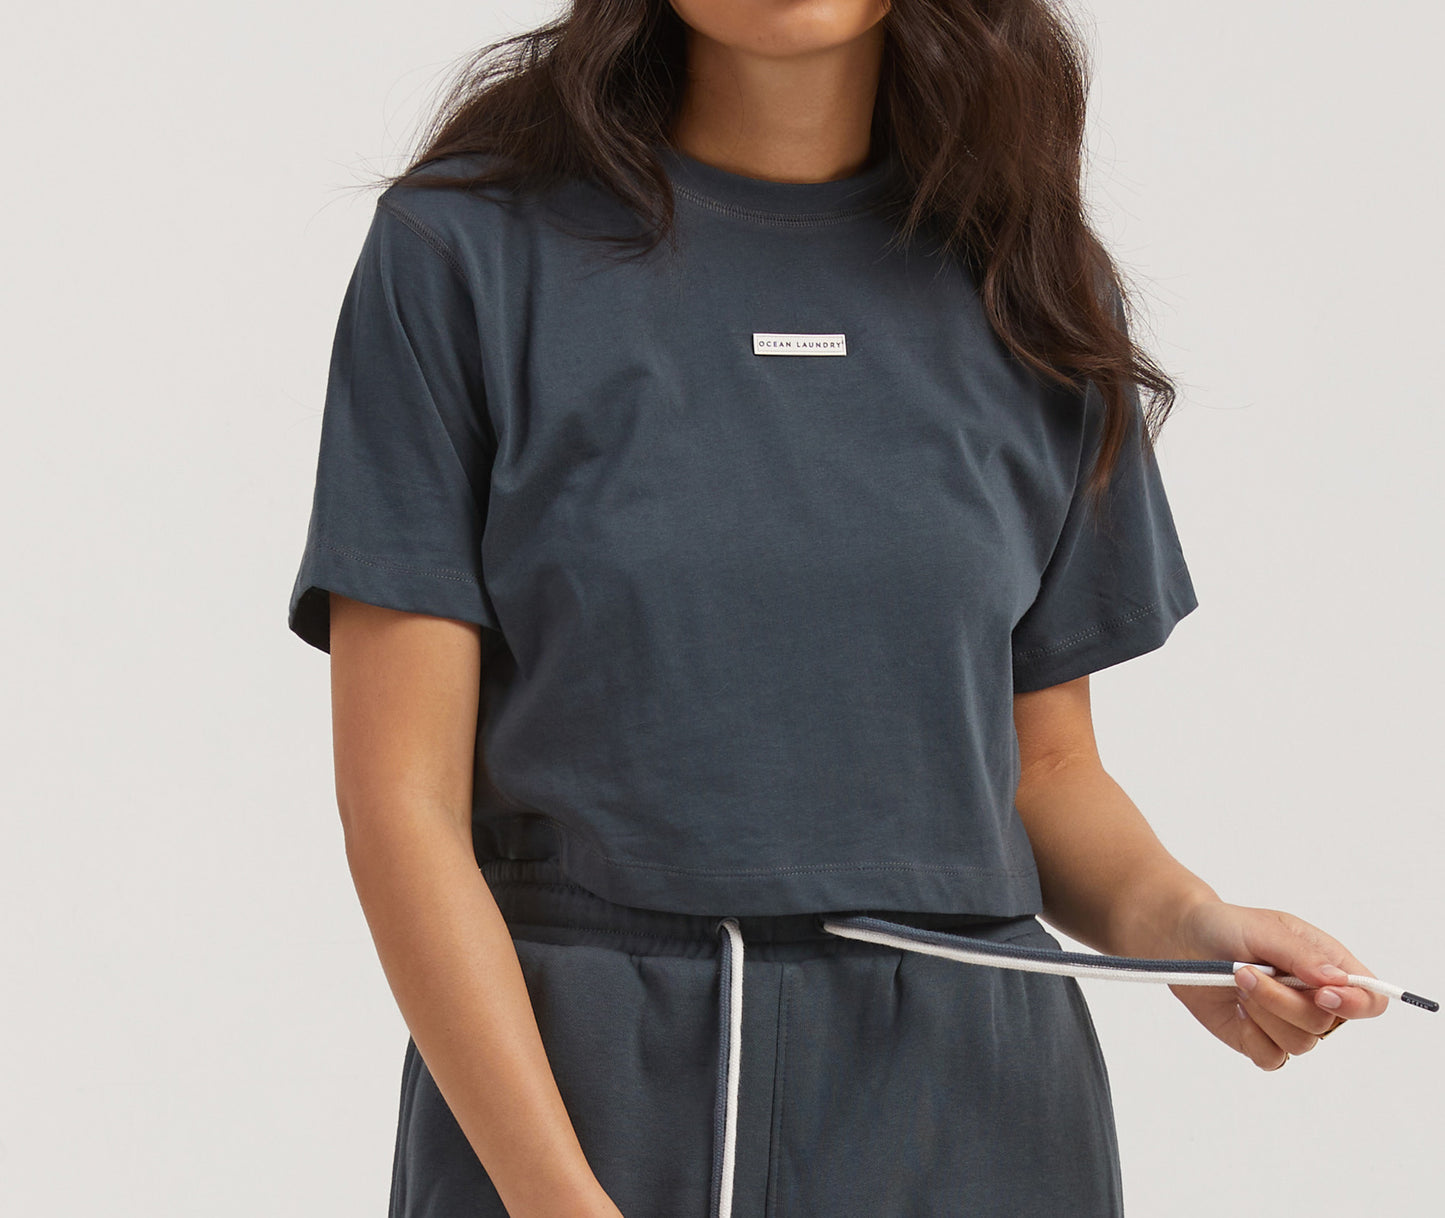 Honey Women's Cropped T-shirt - Charcoal